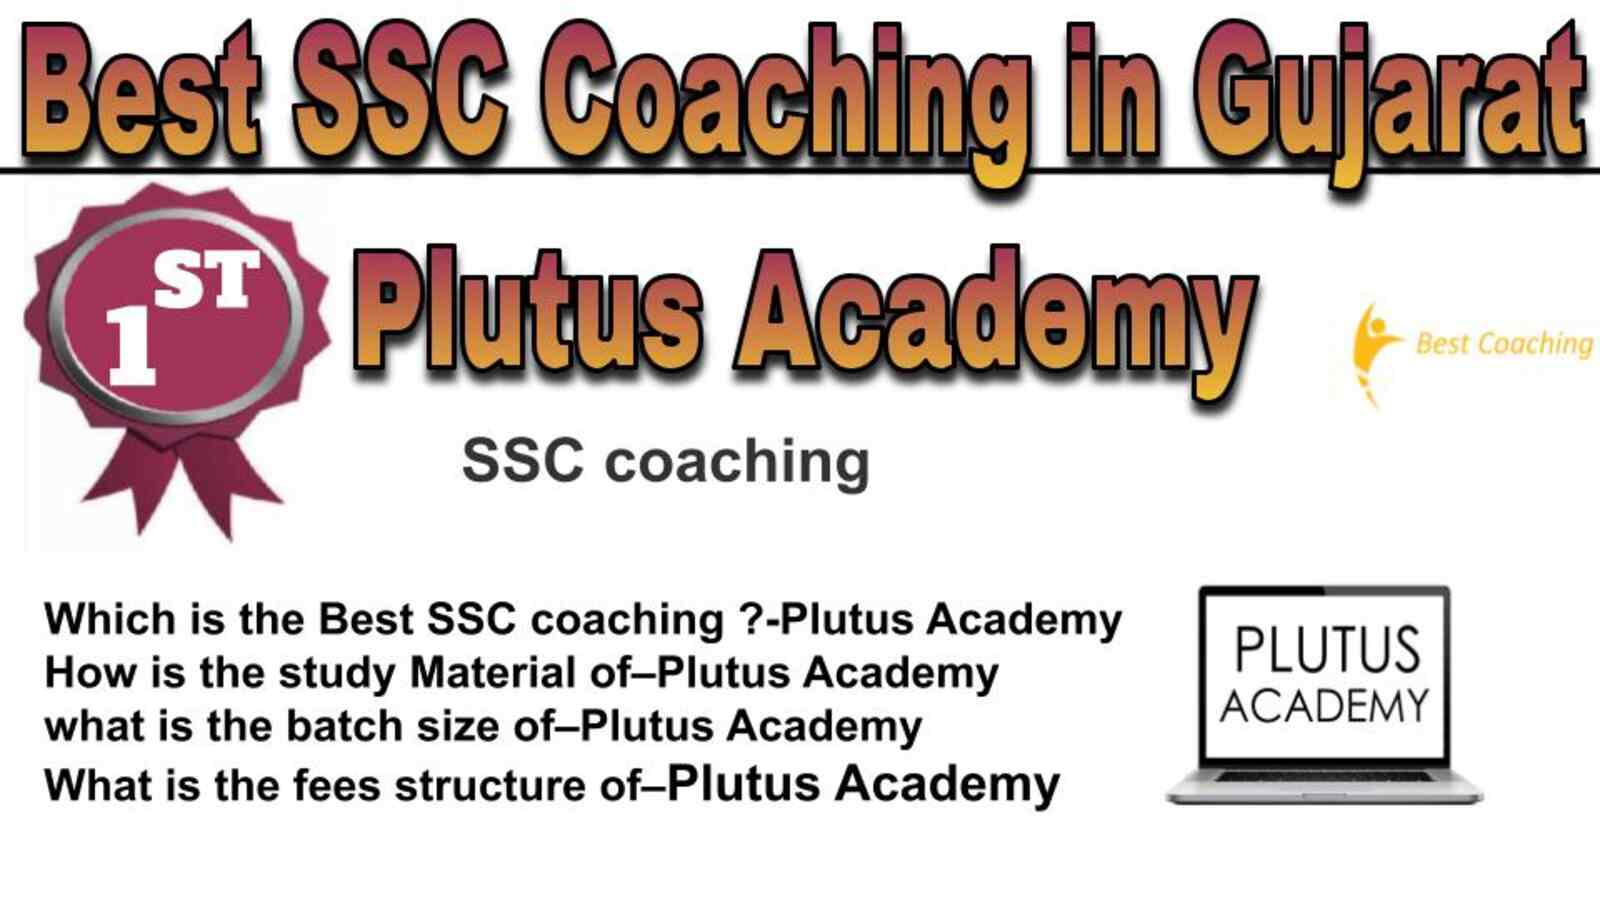 Rank 1 best SSC coaching in Gujarat